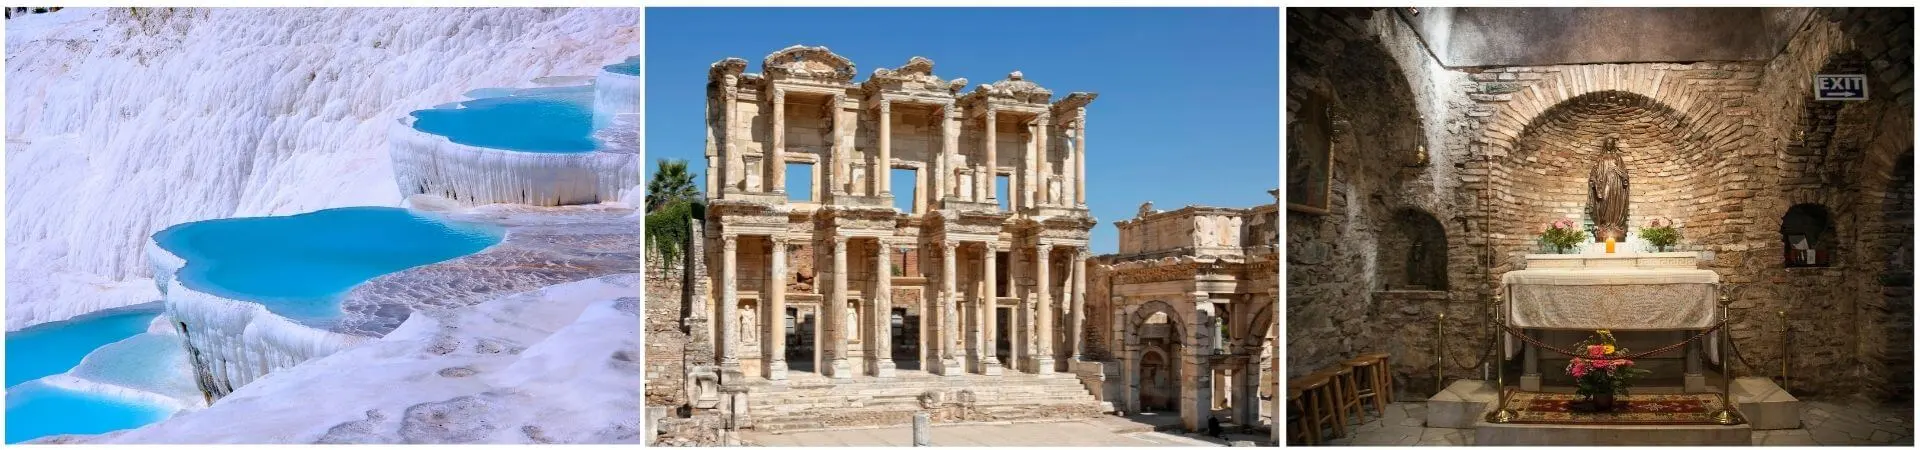 Ephesus & Pamukkale Tour 2 Days 1 Night (Discounted)